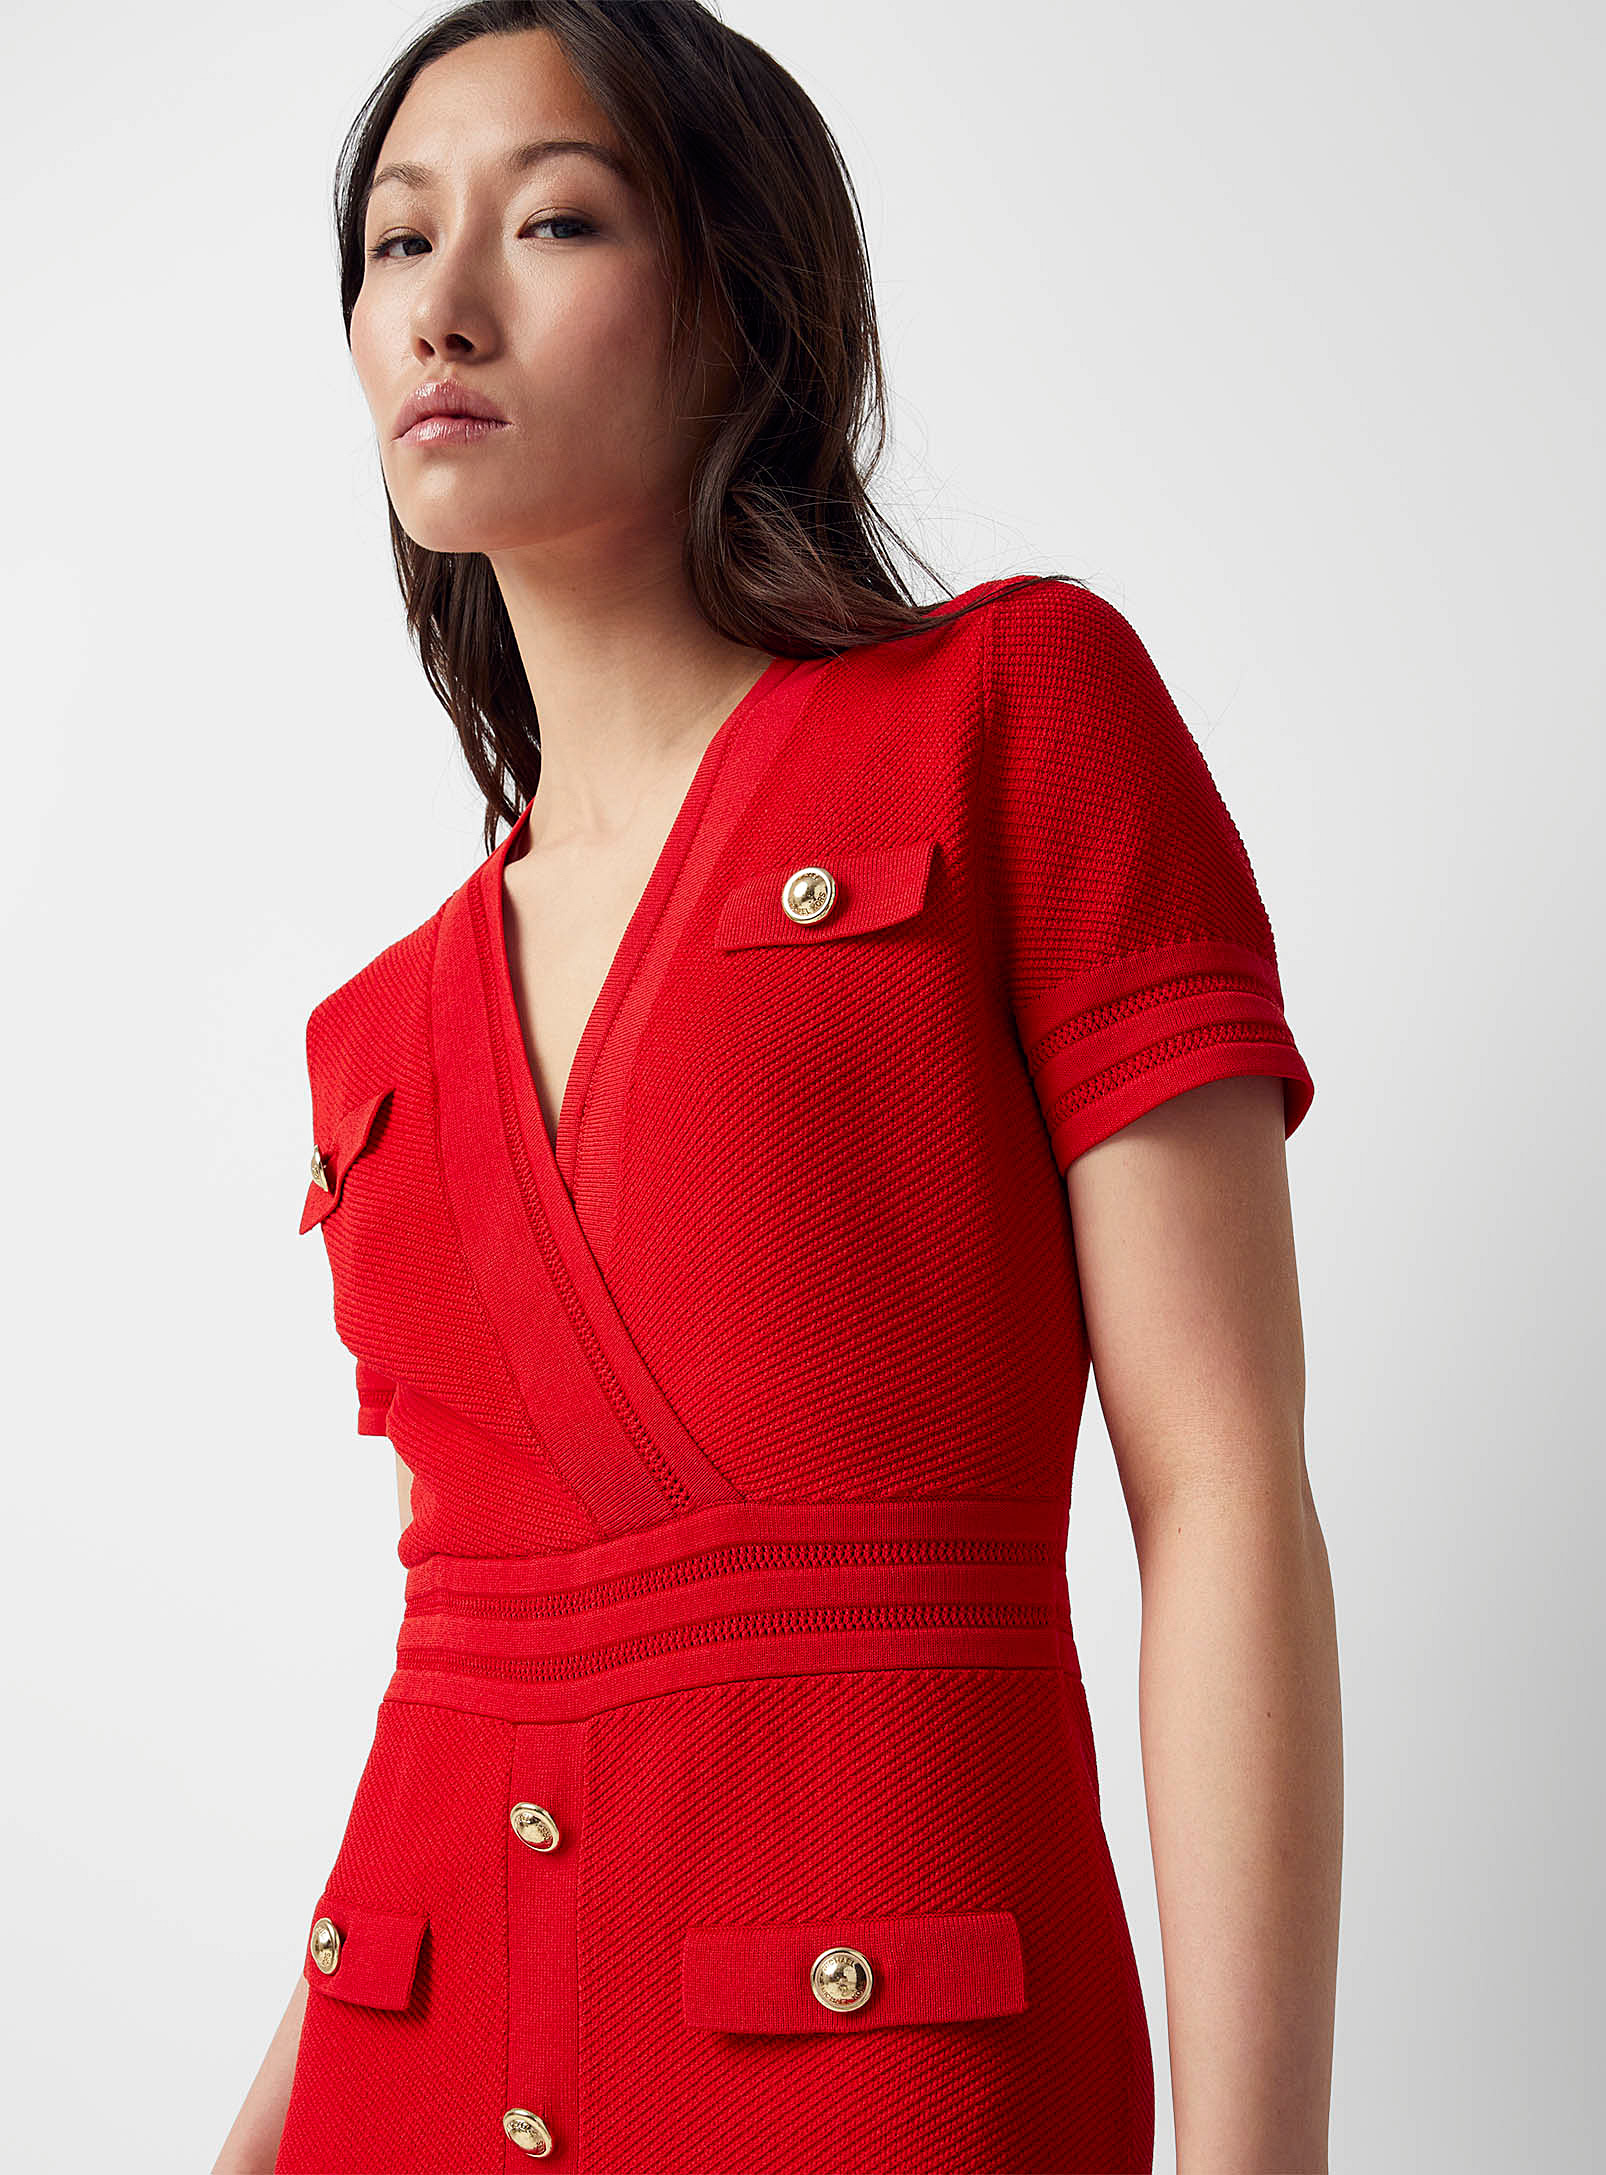 Michael Kors - Women's Golden buttons scarlet knit dress